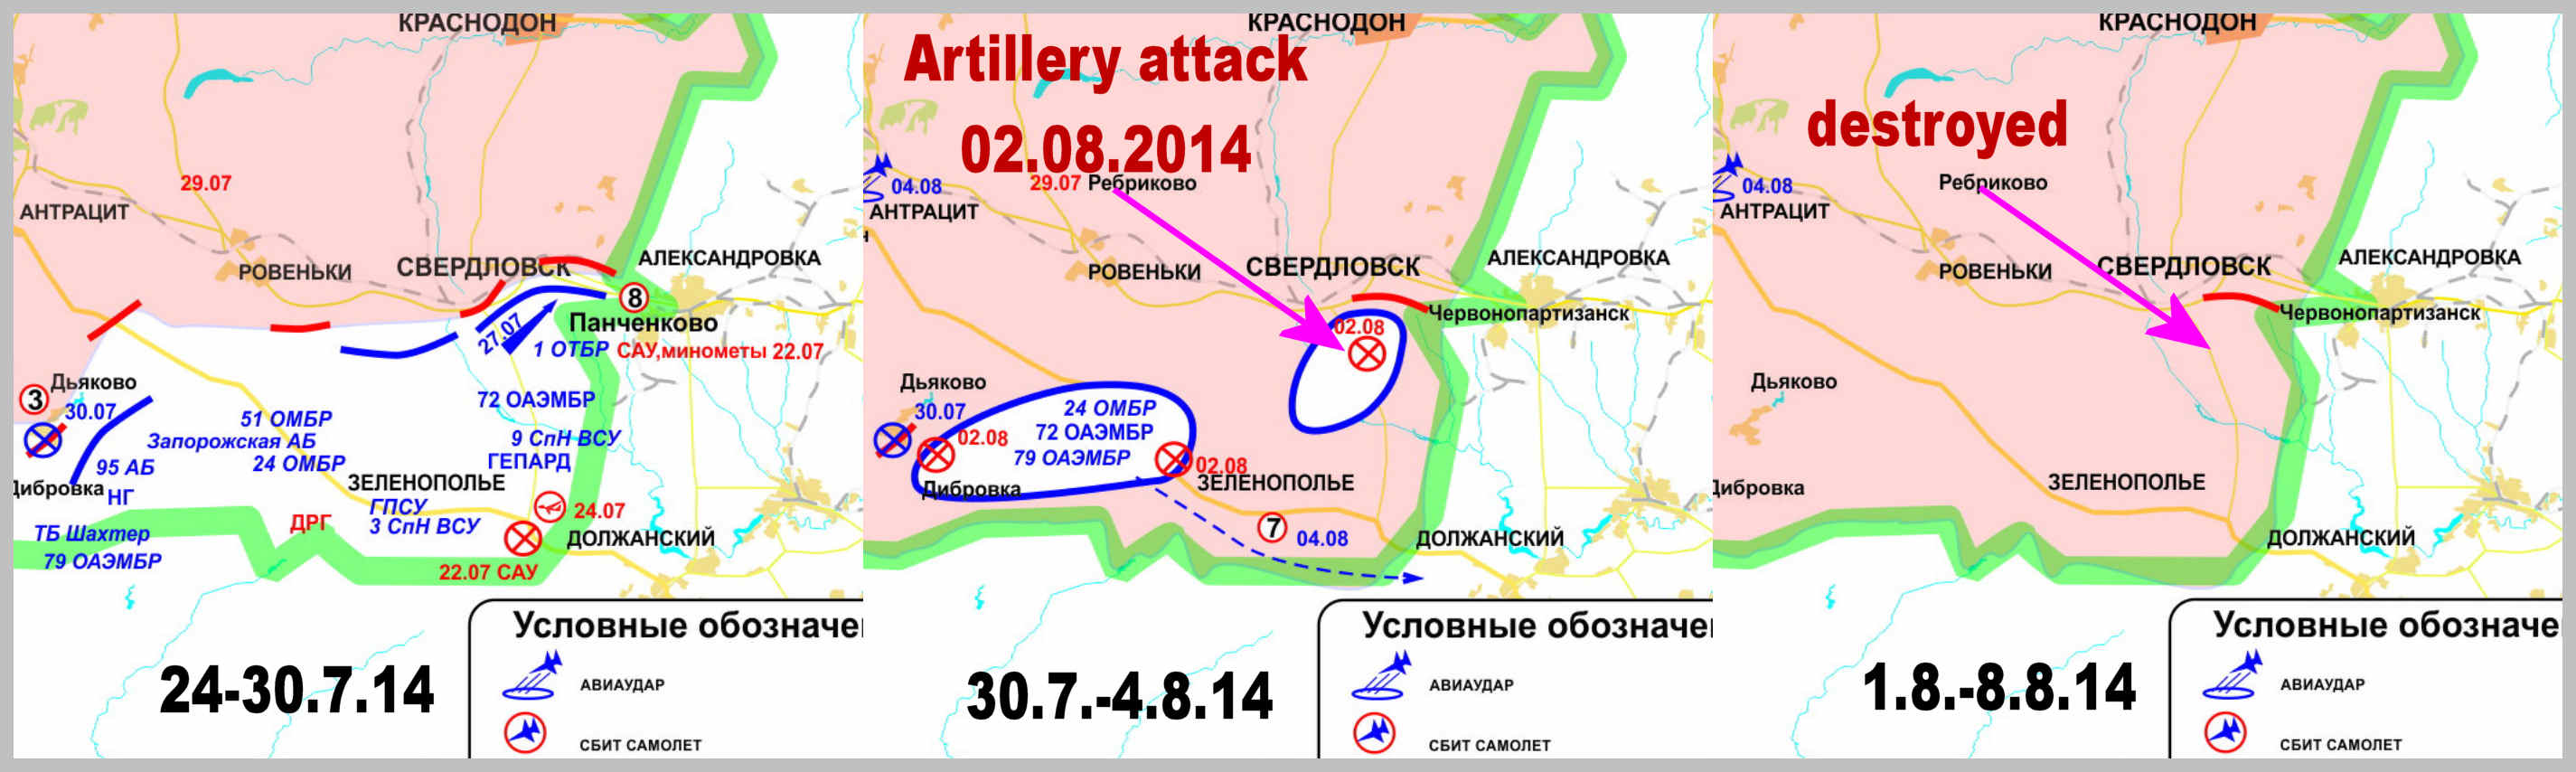 Зіткнення на південному сході від Свердловська з 11 по 24 липня (карти з про-російських сайтів)